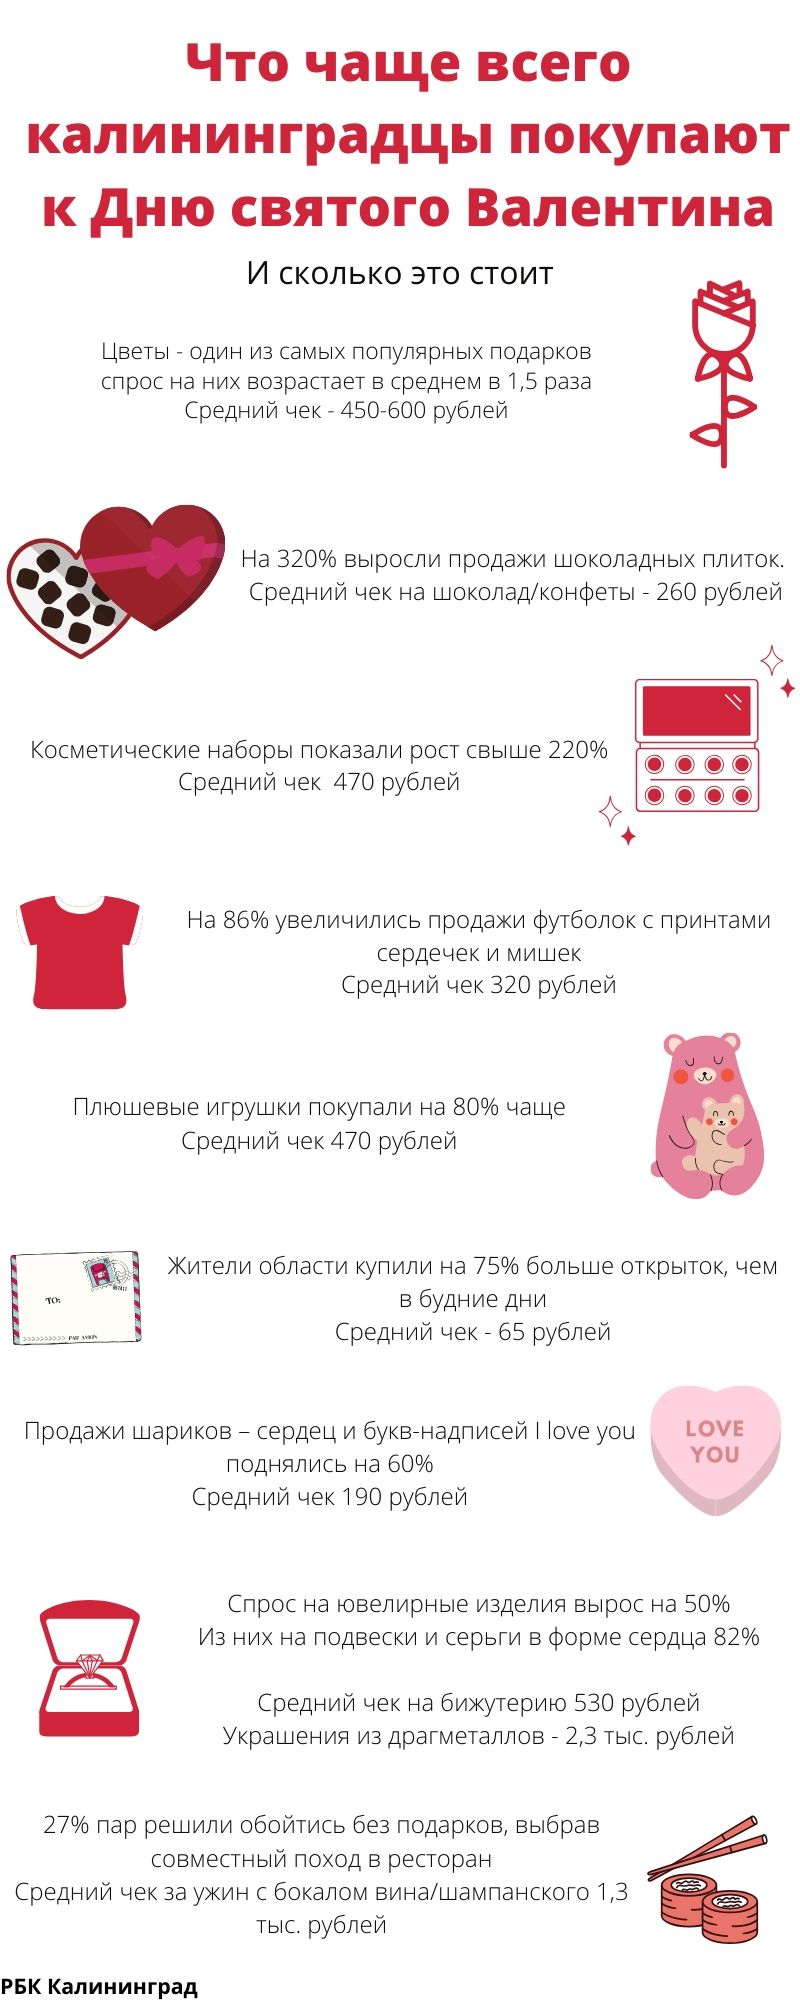 Самые популярные подарки на день Валентина и их цена (инфографика)